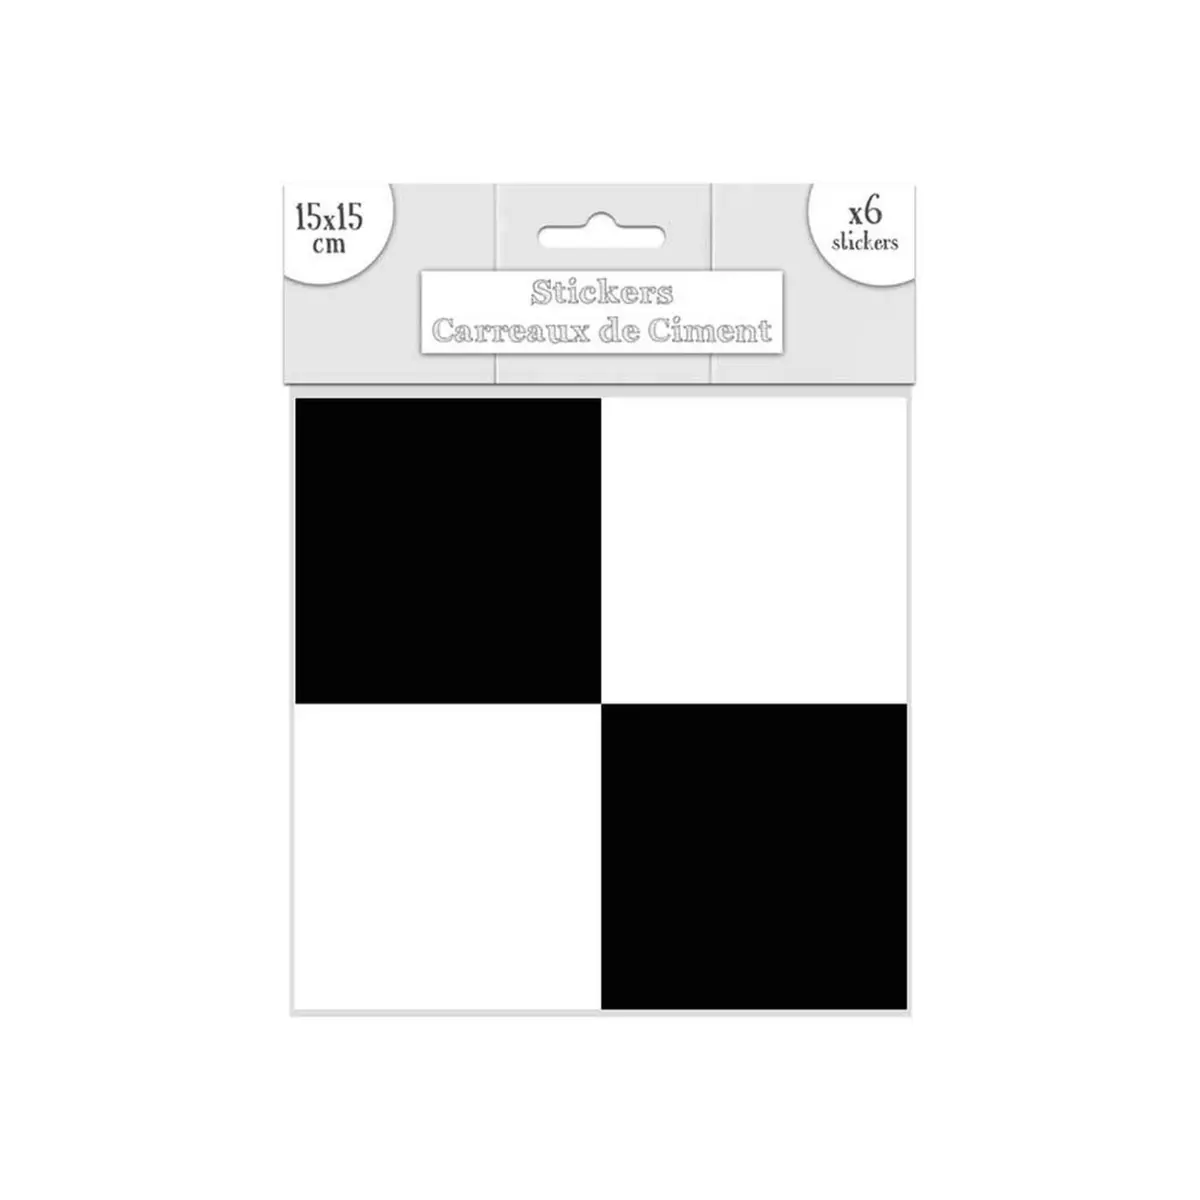 SUD TRADING 6 Stickers carreaux de ciment - 15 x 15 cm - Carrés Noirs et blancs